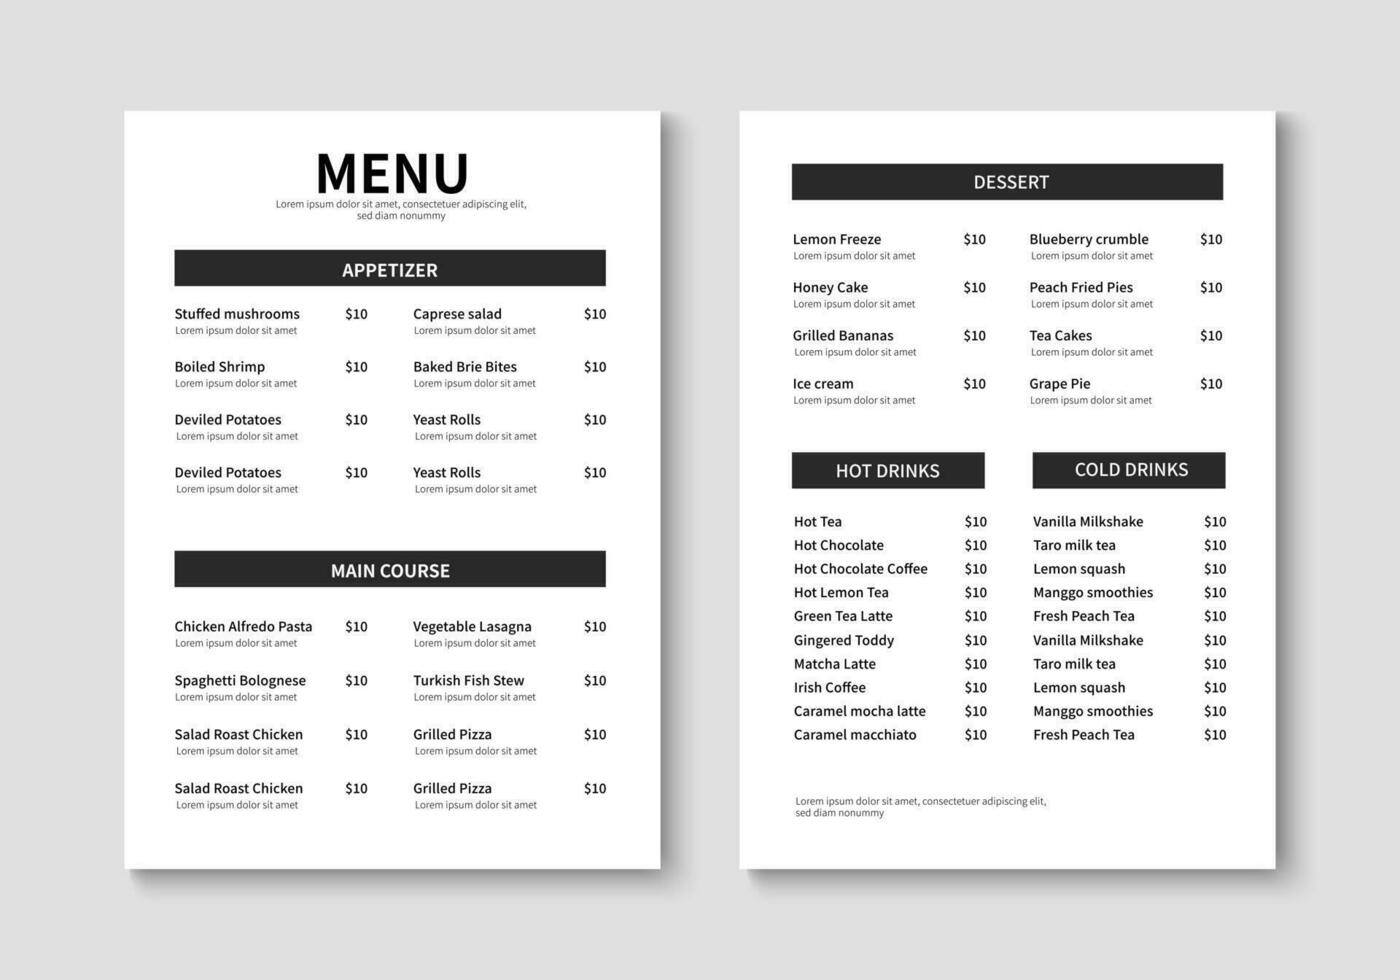 menu sjabloon voor restaurant en cafe. minimalistische restaurant menu boekje ontwerp. brochure, omslag, folder ontwerp. vector illustratie